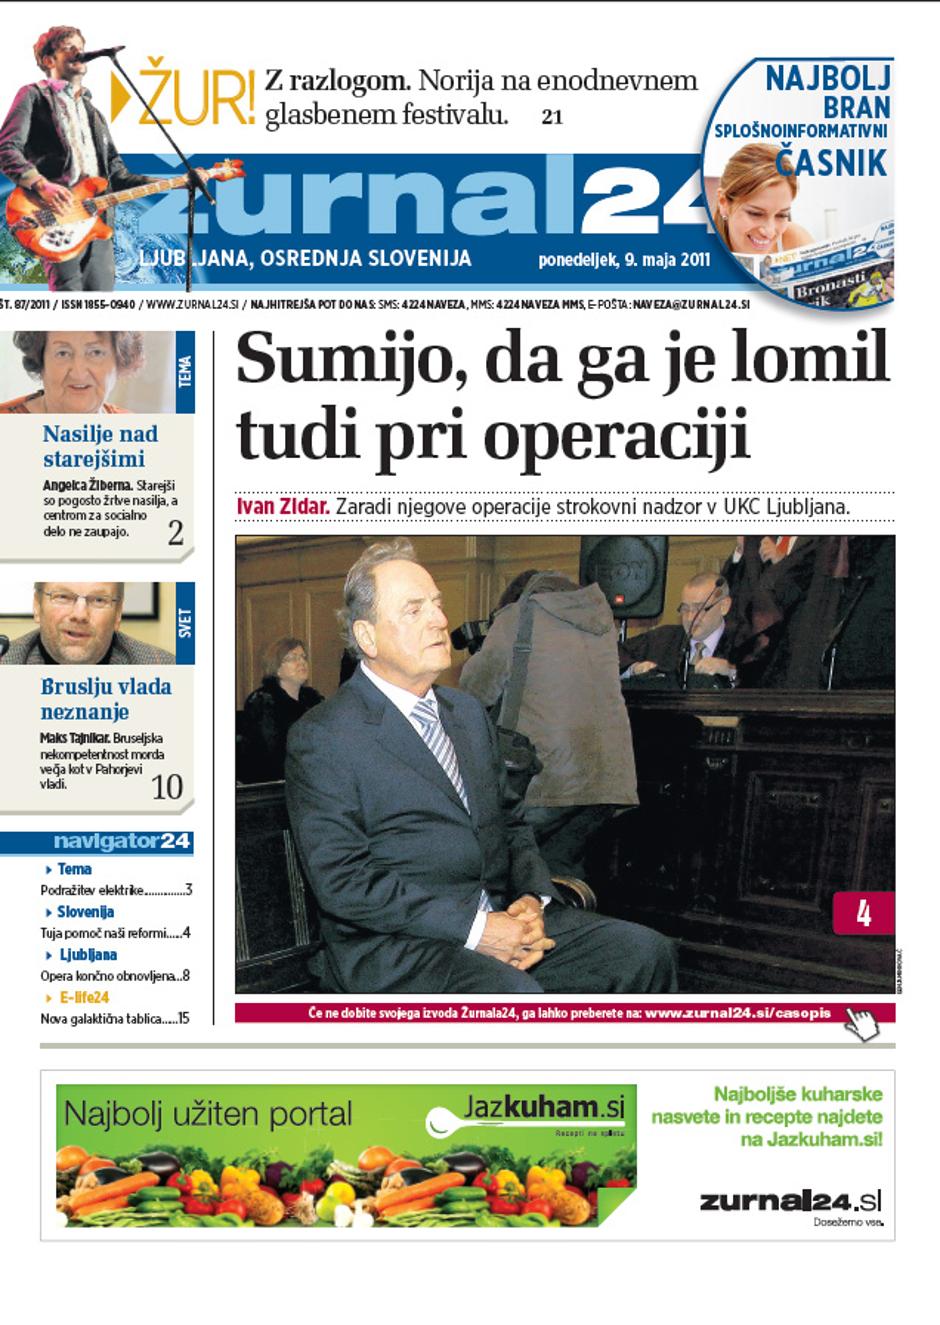 naslovnica, zidar | Avtor: Žurnal24 main